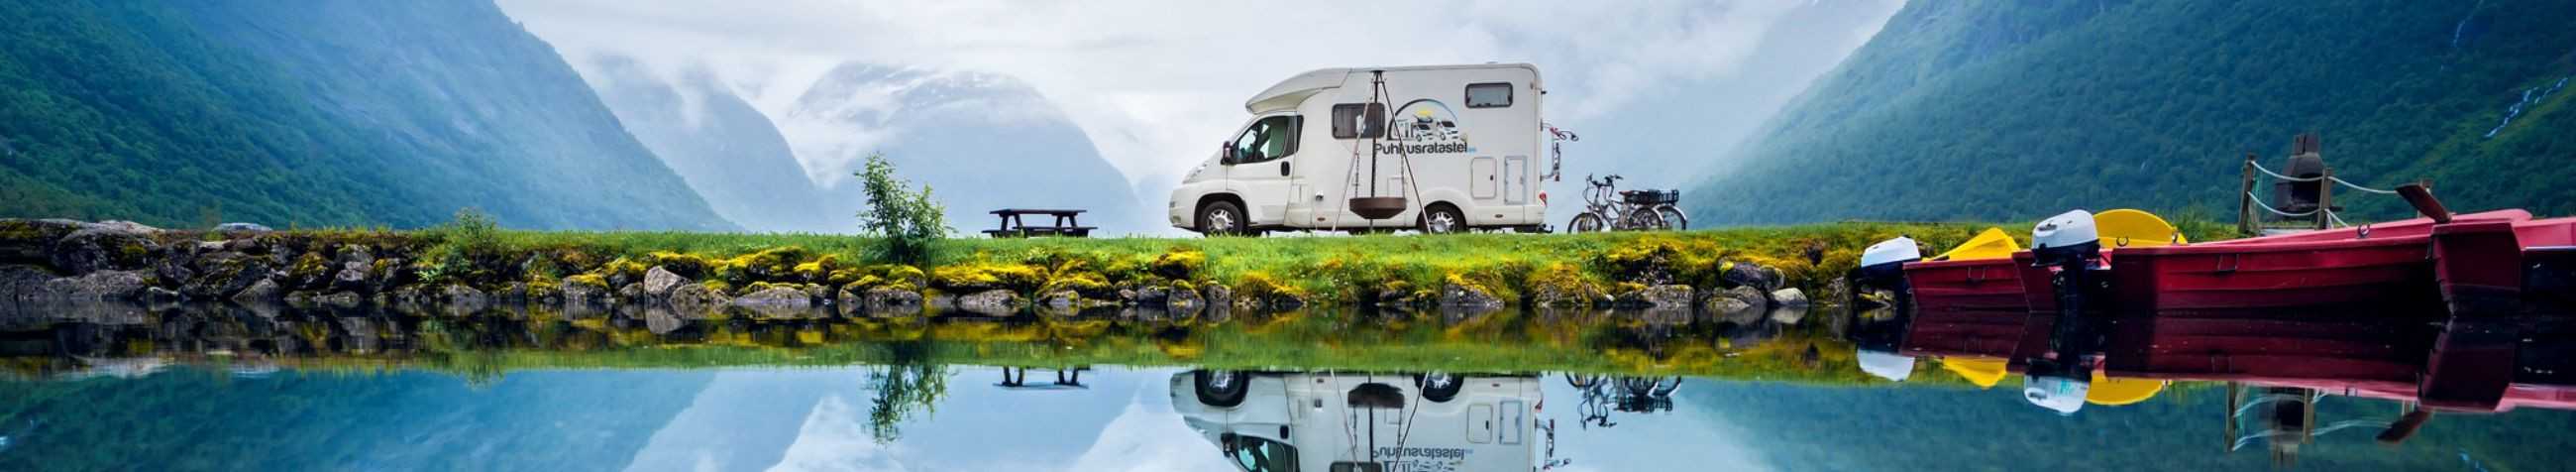 Mabure OÜ tegeleb matkaautode ja väikebusside rendiga, pakkudes reisisõpradele unustamatuid seiklusi Eestis.